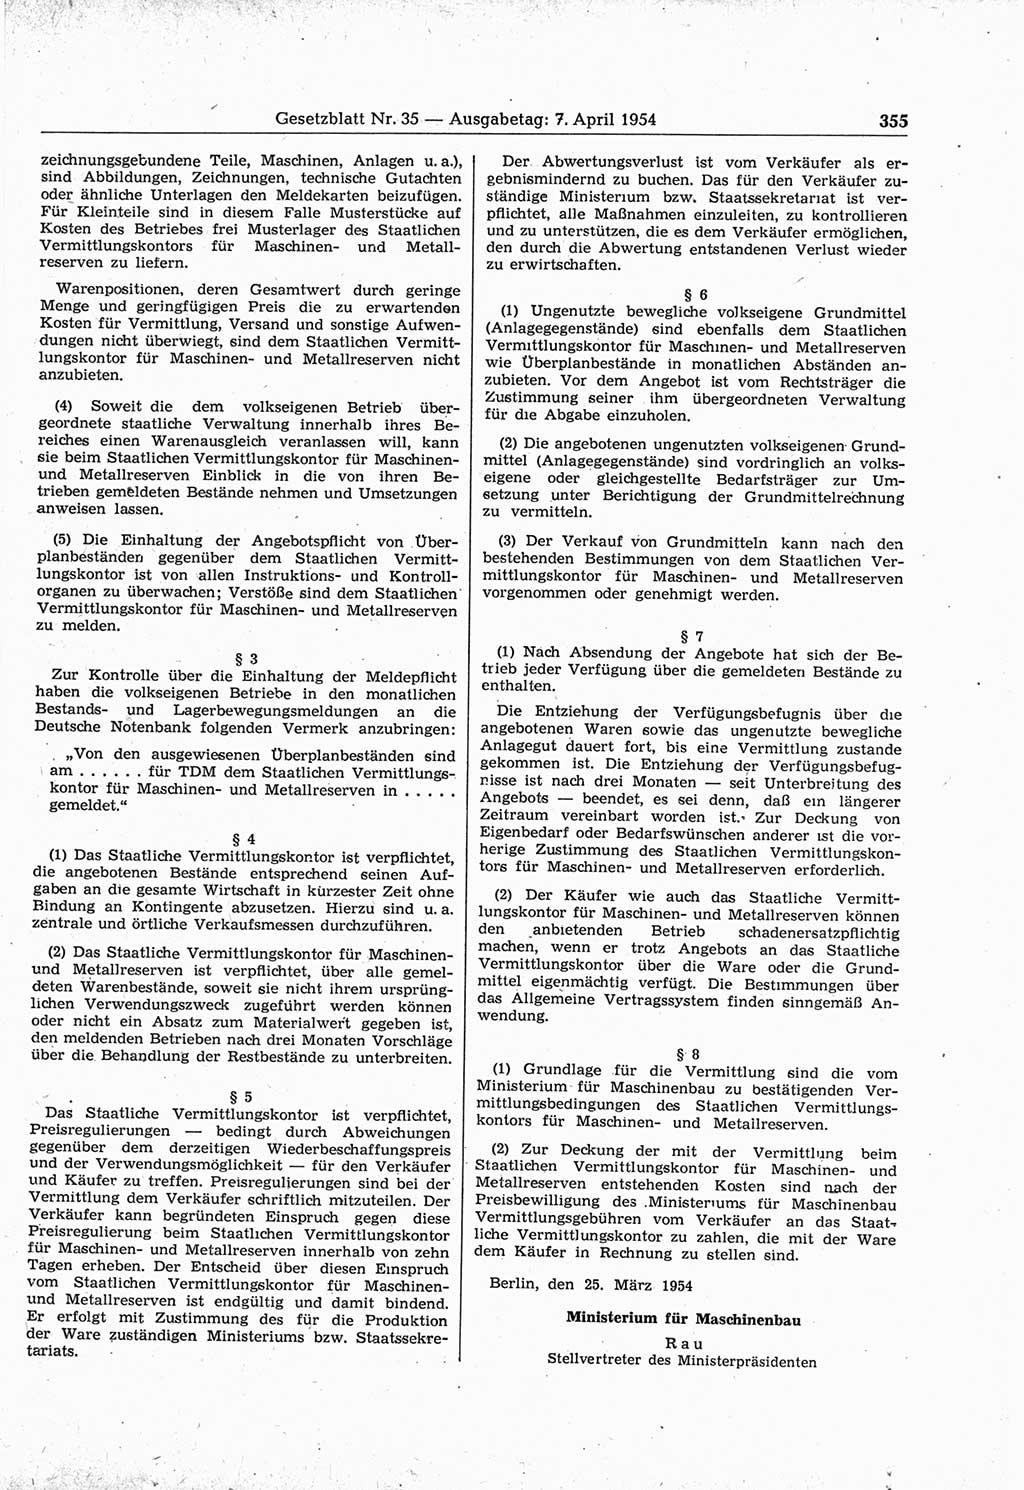 Gesetzblatt (GBl.) der Deutschen Demokratischen Republik (DDR) 1954, Seite 355 (GBl. DDR 1954, S. 355)